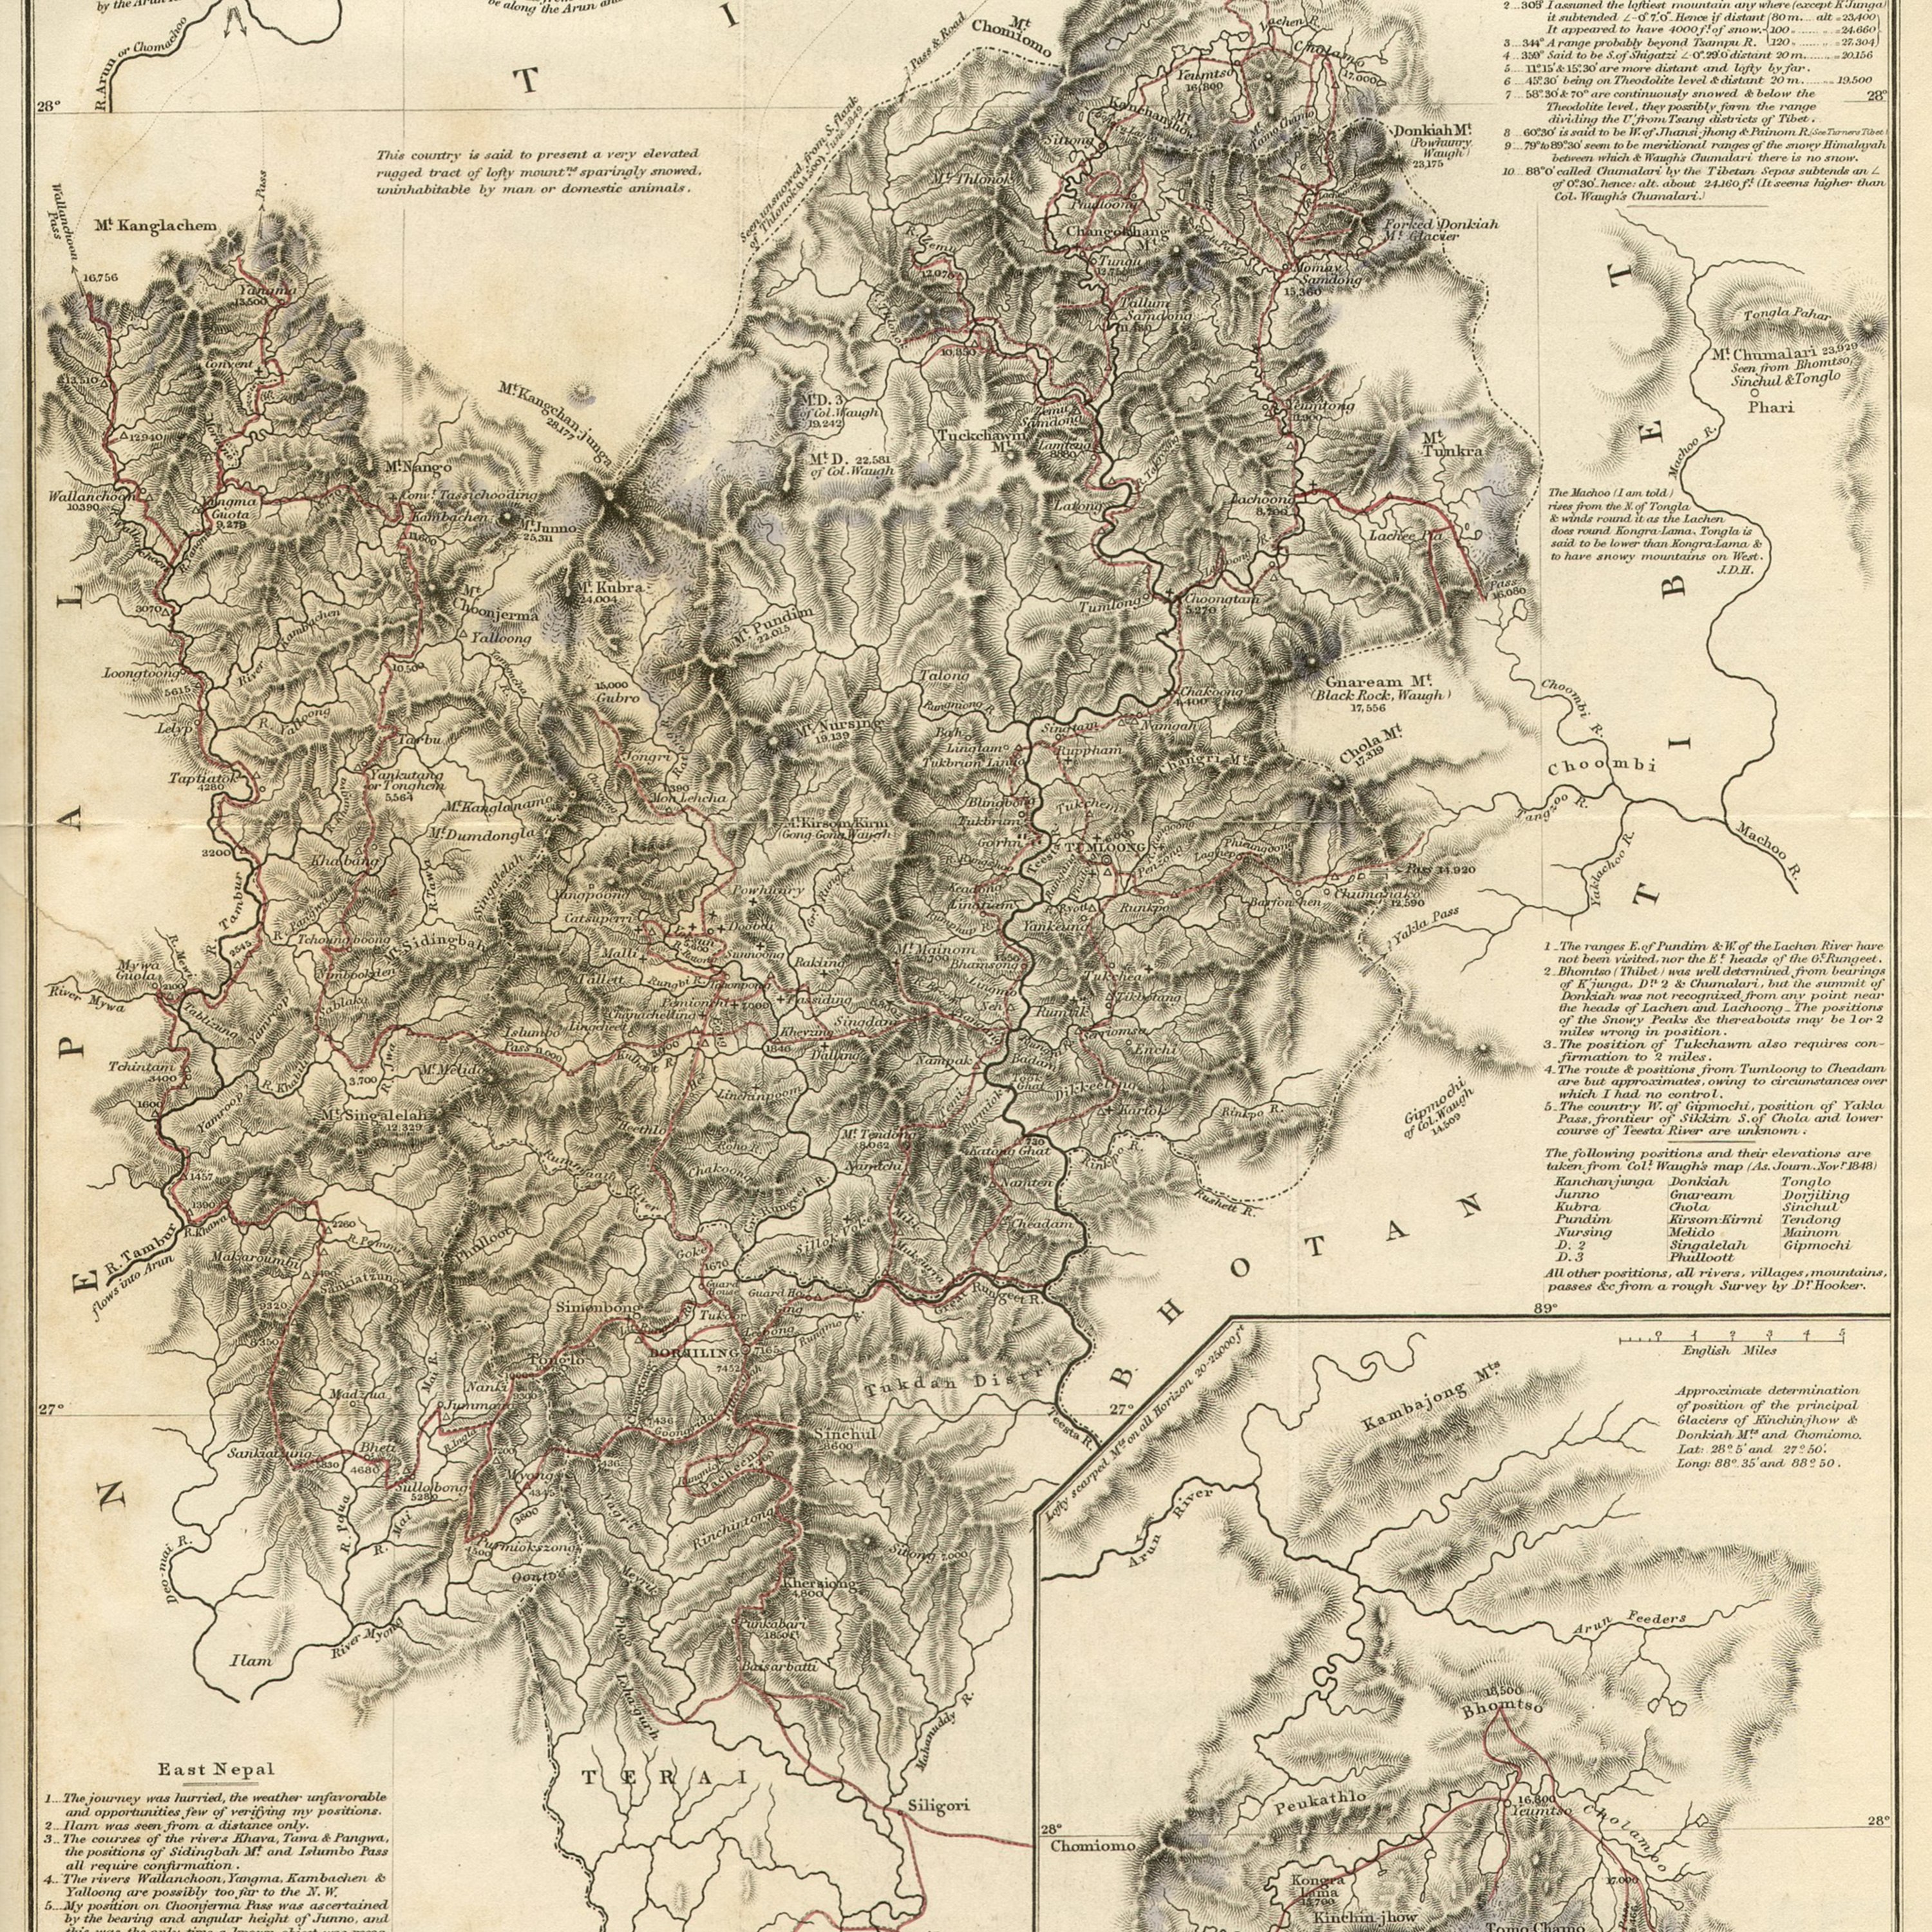 1854_Sikkim_map_from_Hooker's_Himalayan_Journals.jpg